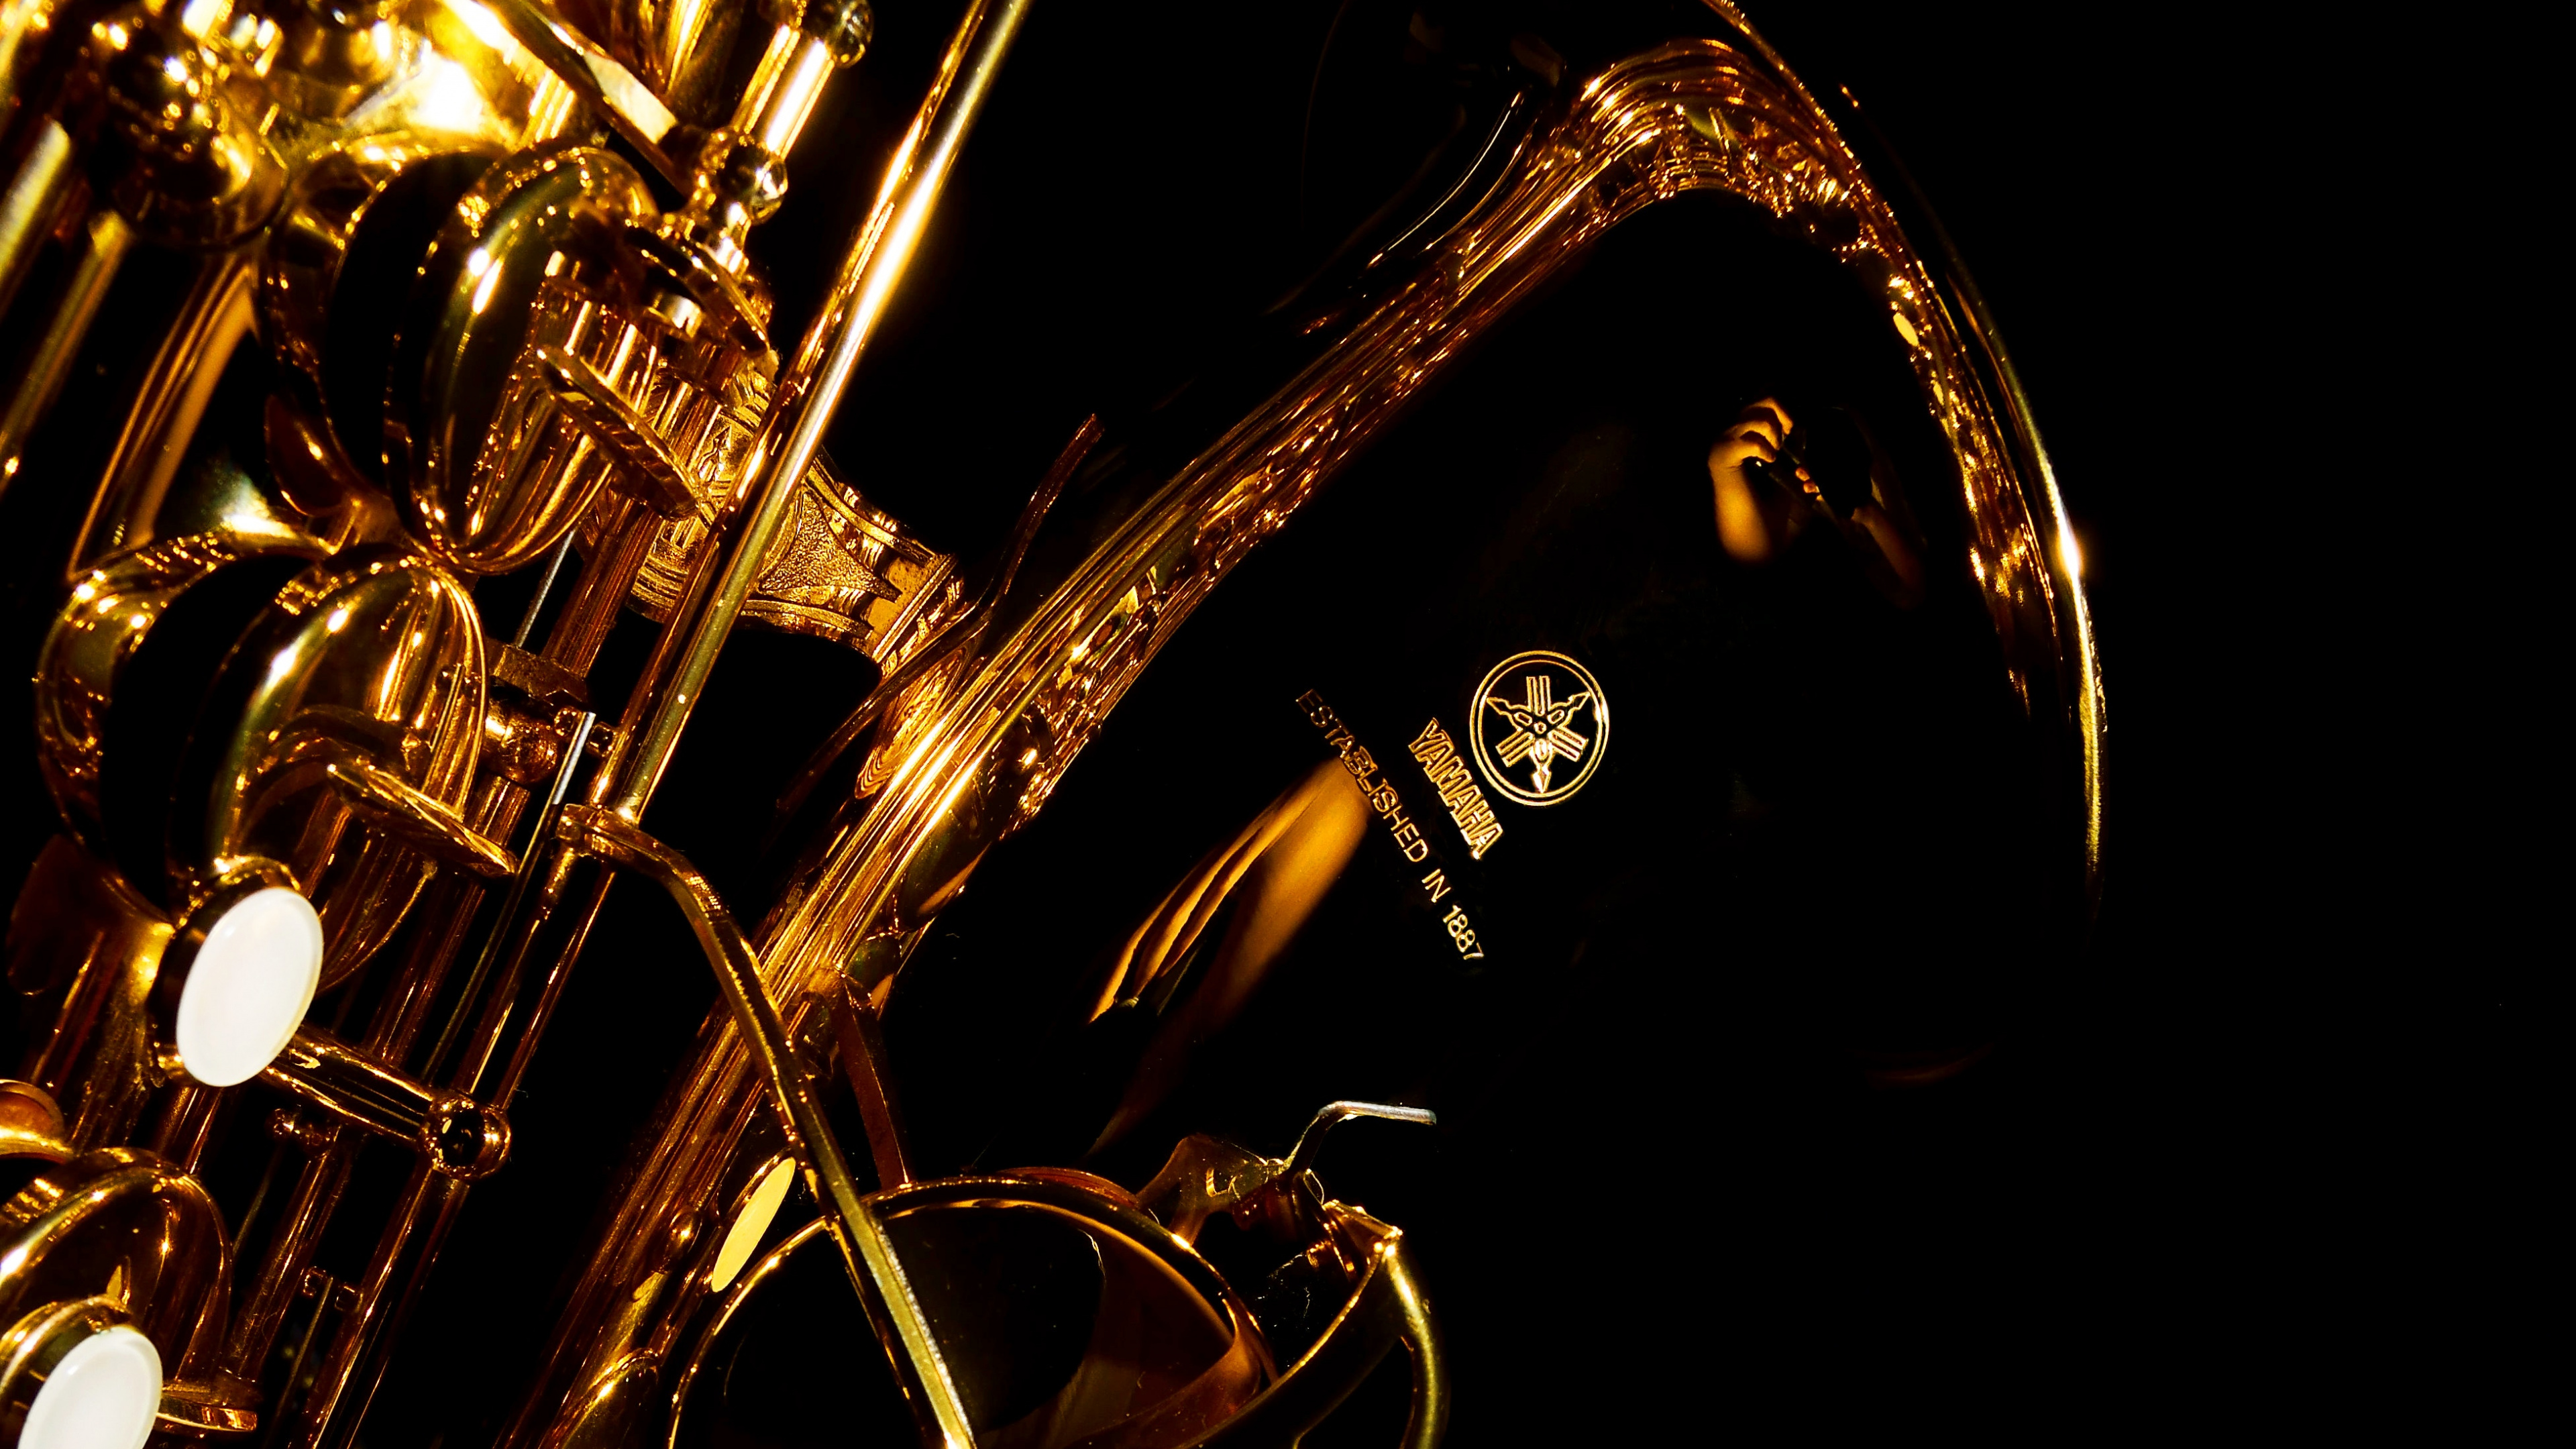 Trumpet, Saxophone, Brass Instrument, Wind Instrument, Violin. Wallpaper in 3840x2160 Resolution